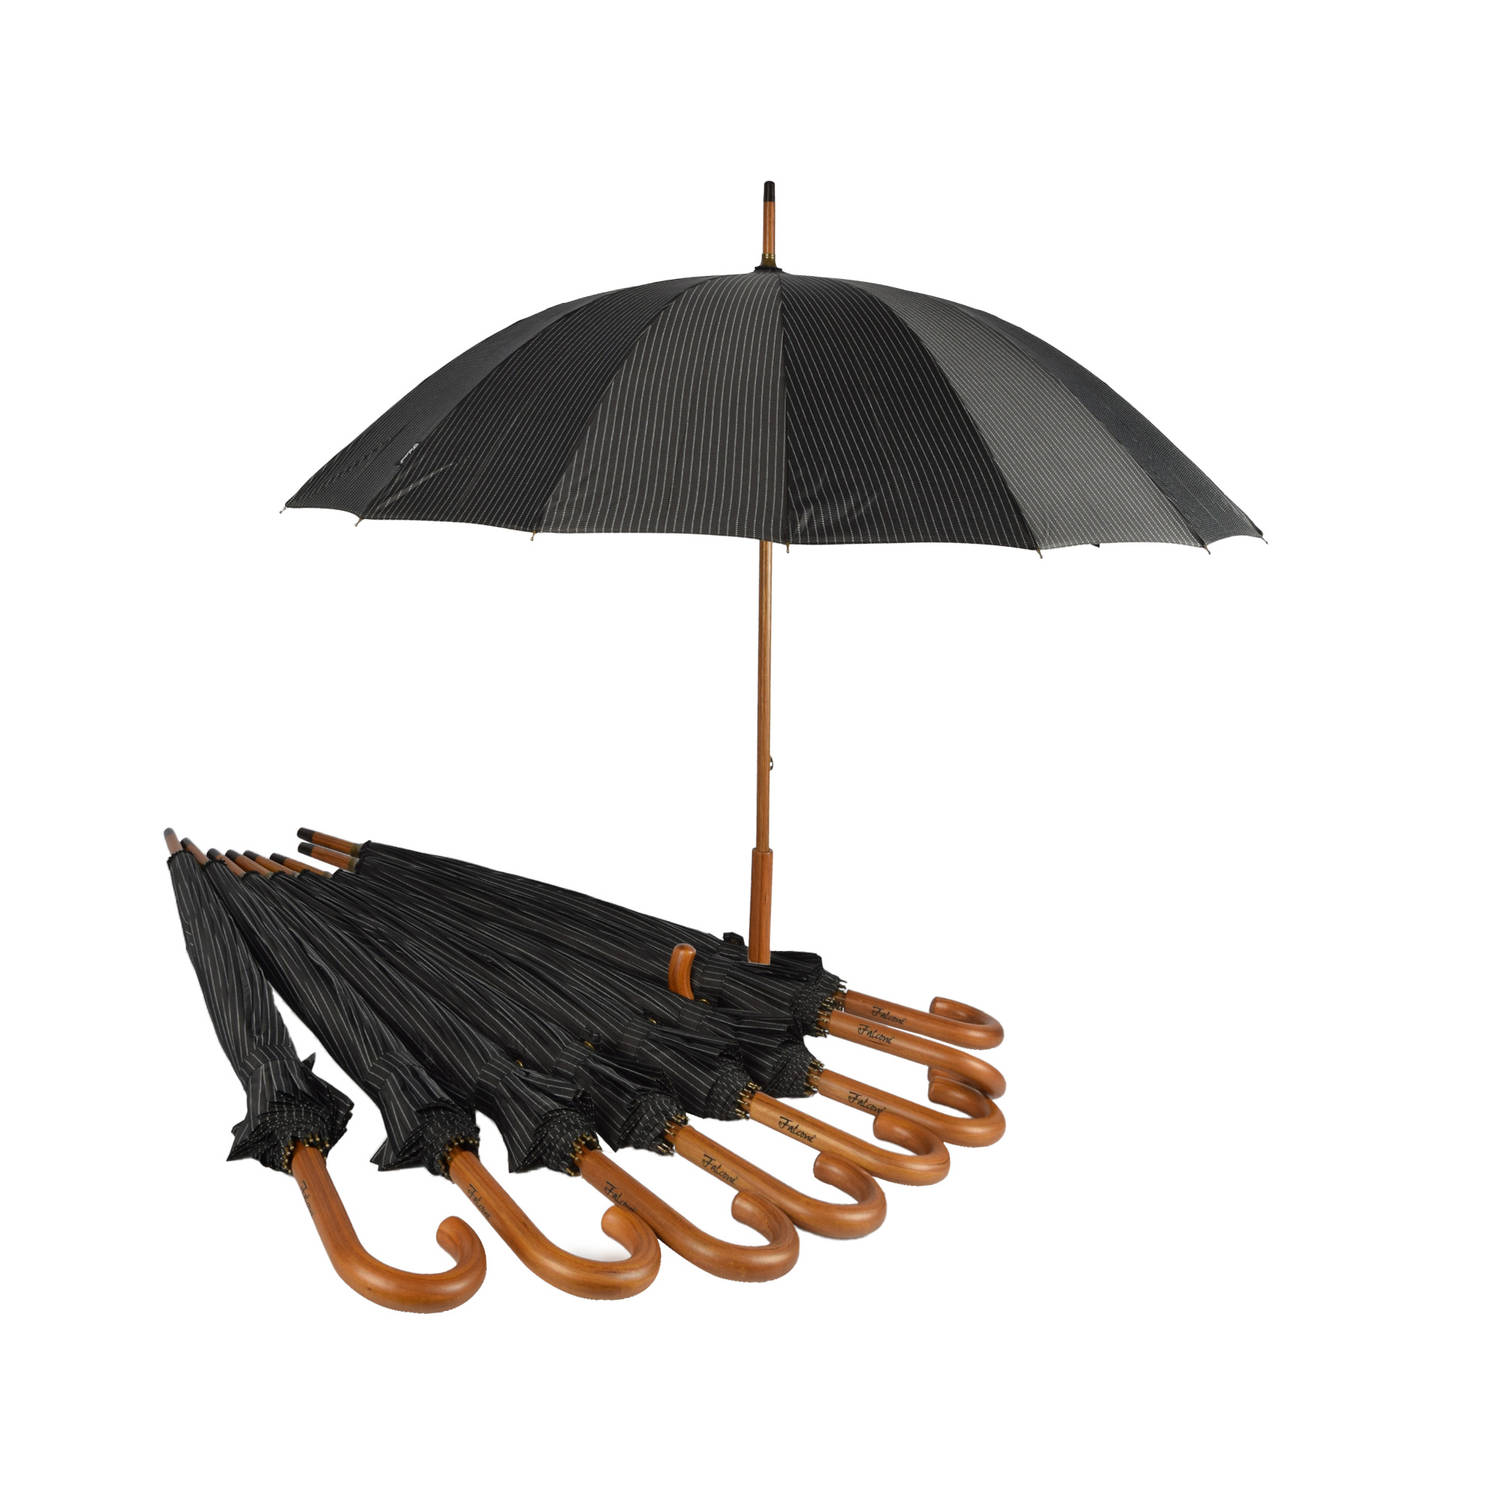 Negen Stevige Paraplu&apos;s voor Maximale Bescherming - Zwart met Witte Streepjes - Met Houten Handvat - 102cm Diameter